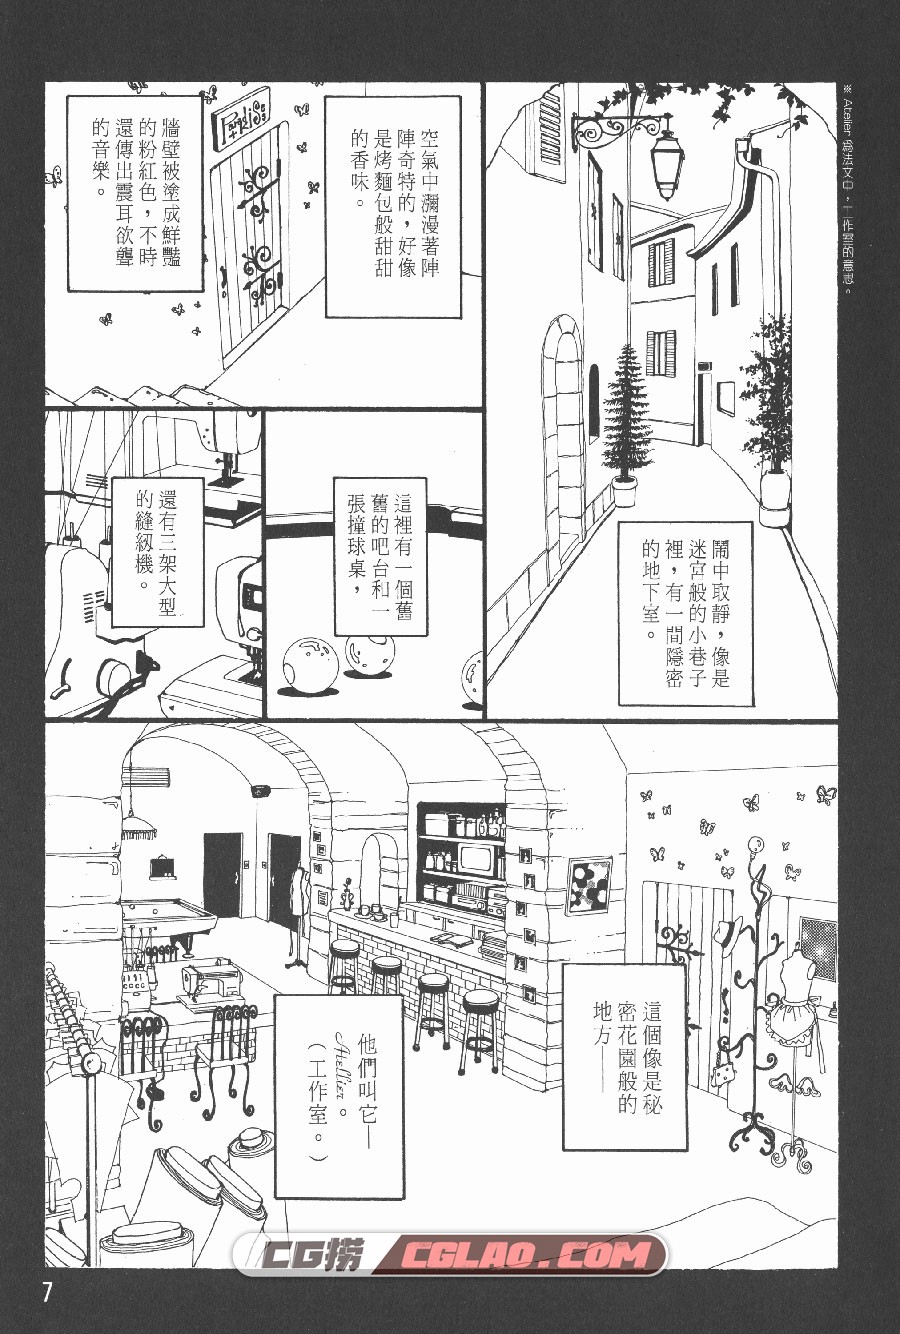 天国之吻 矢泽爱 1-5卷 漫画完结全集下载 百度网盘,TK01_002.jpg